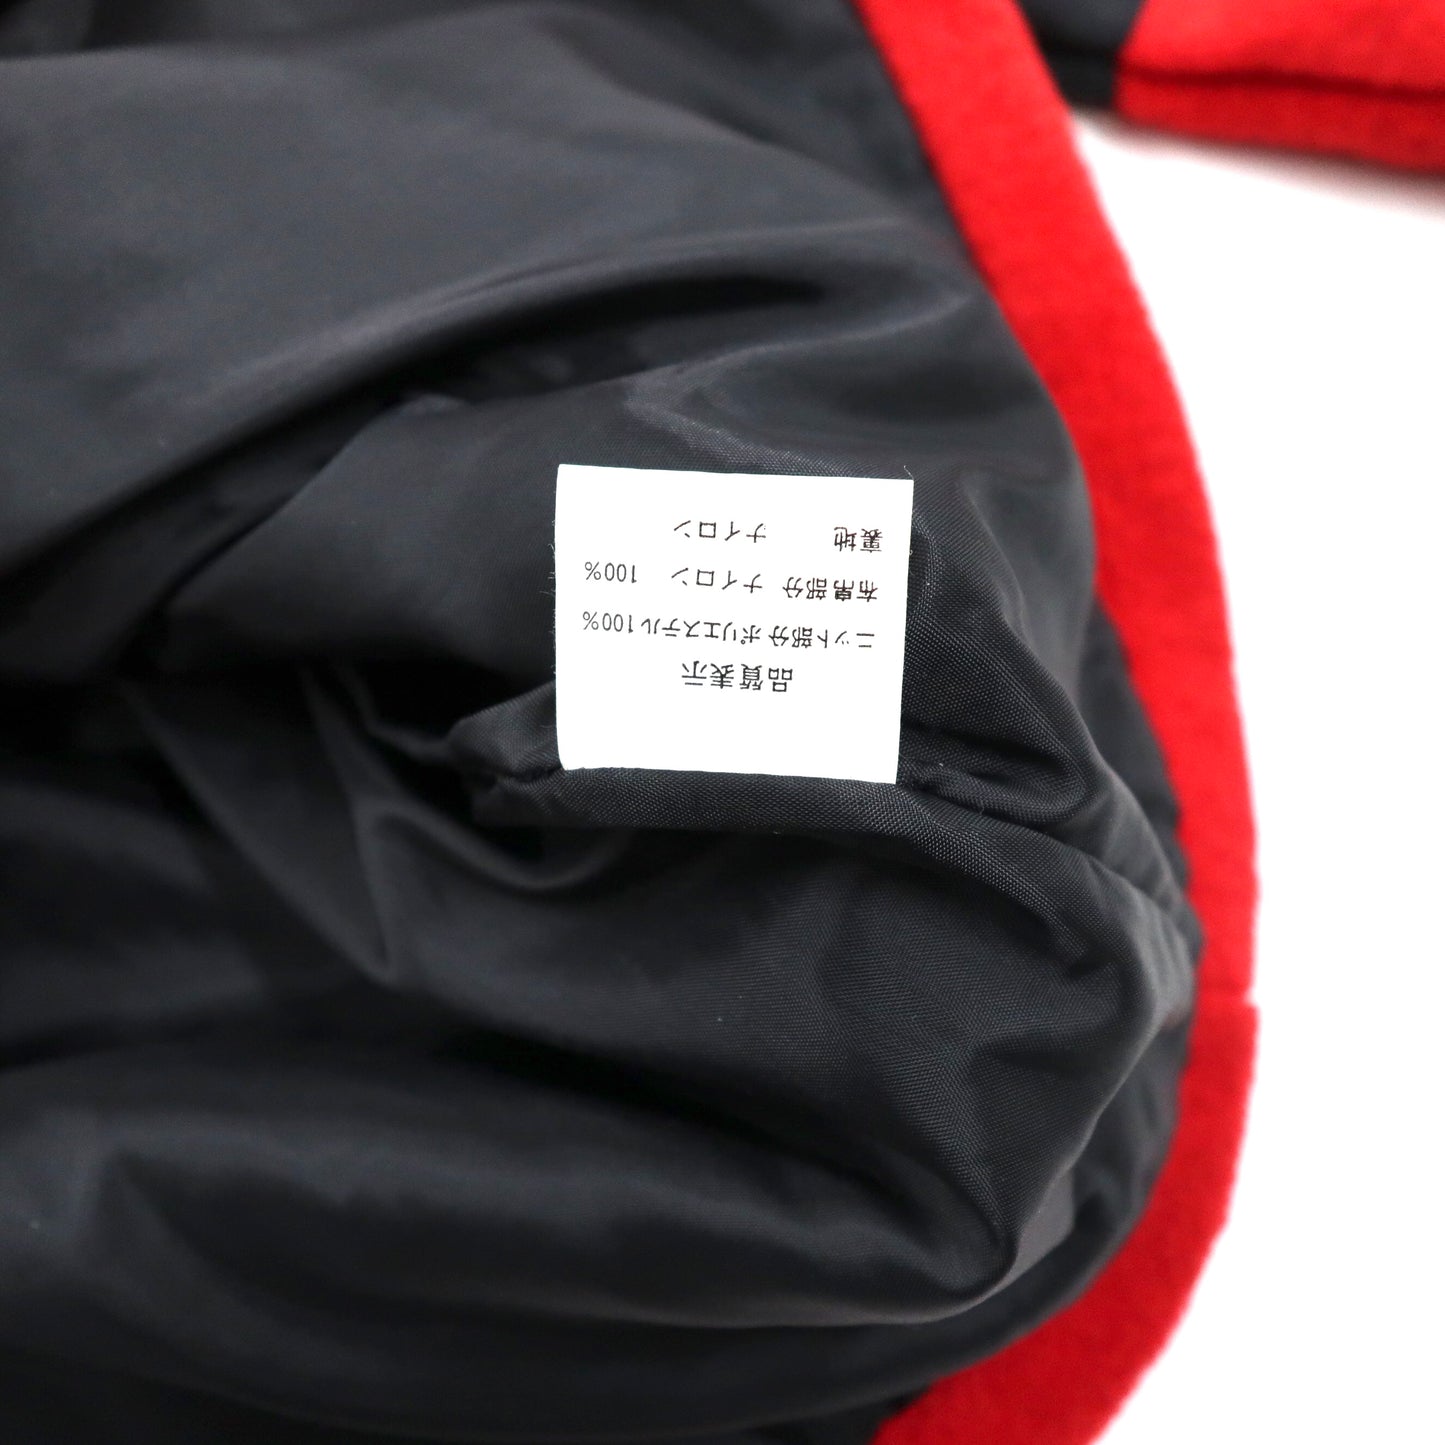 kasche ビッグサイズ フリースジャケット 2XL レッド ポリエステル ドロスト ロゴ刺繍 90年代 未使用品